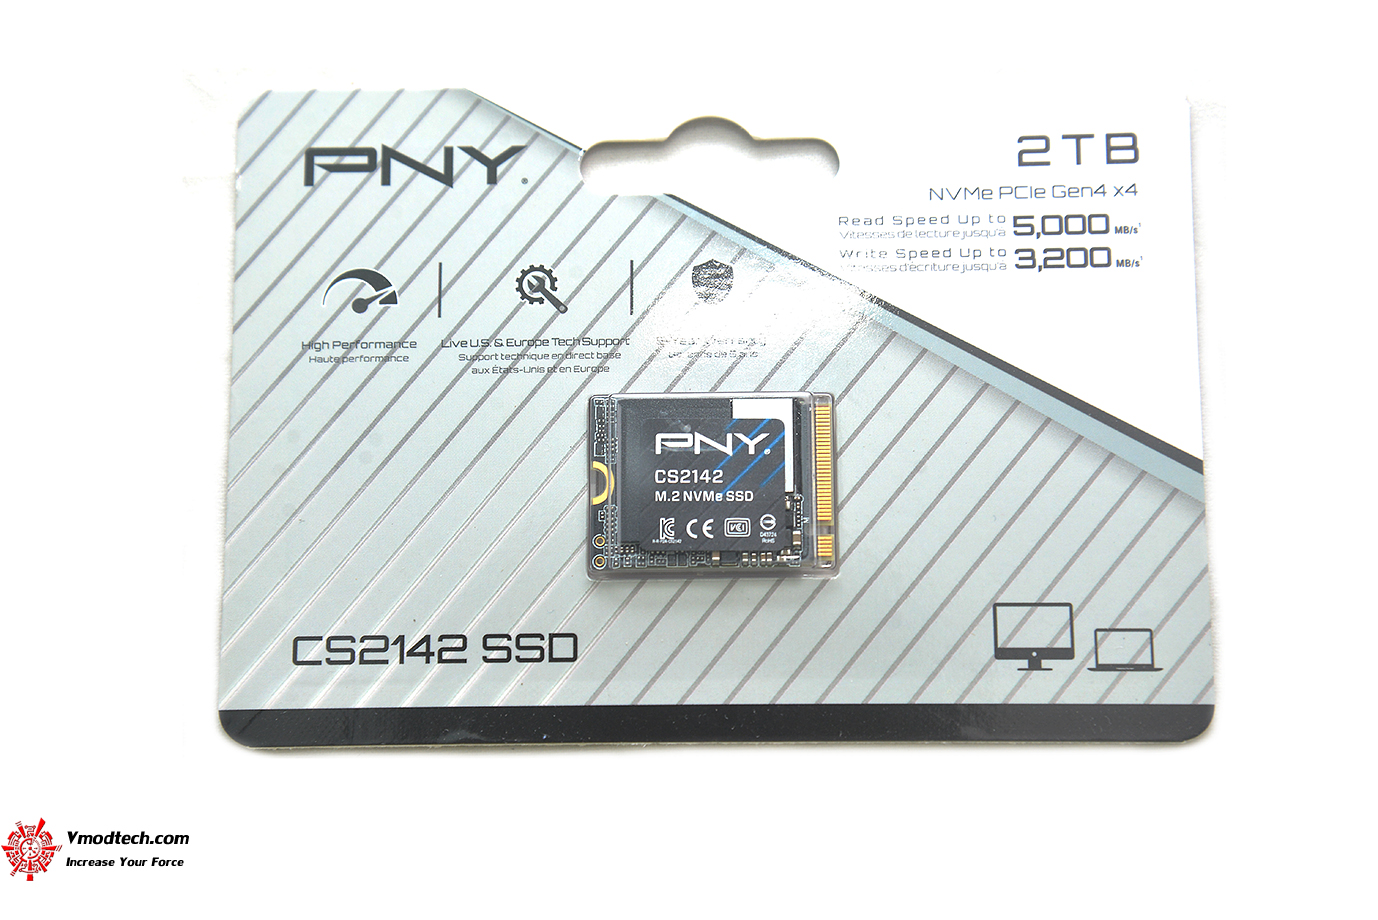 dsc 7313 PNY CS2142 M.2 2230 NVMe Gen4x4 SSD 2TB Review